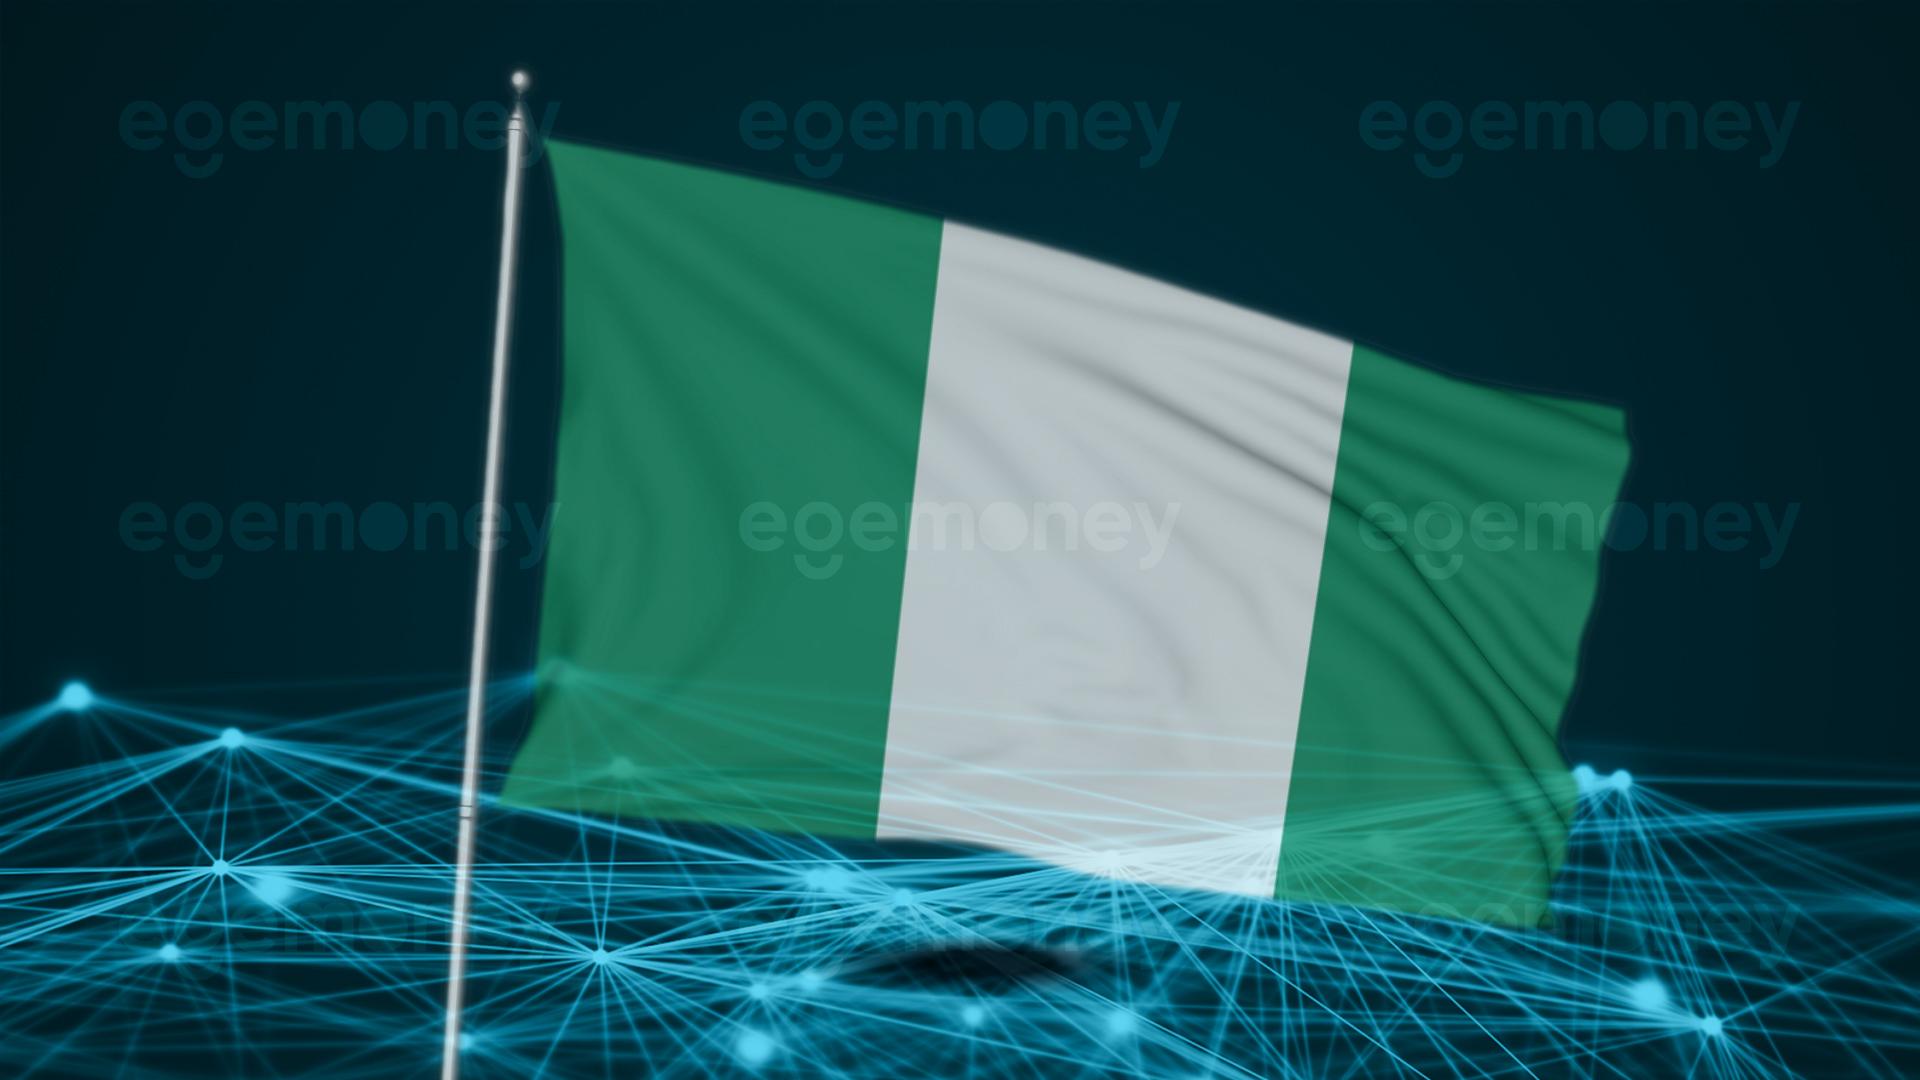 Nijerya Ulusal Ajansı, Devlet Sertifikalarını Doğrulamak İçin Blockchain Teknolojisi Kullanacak